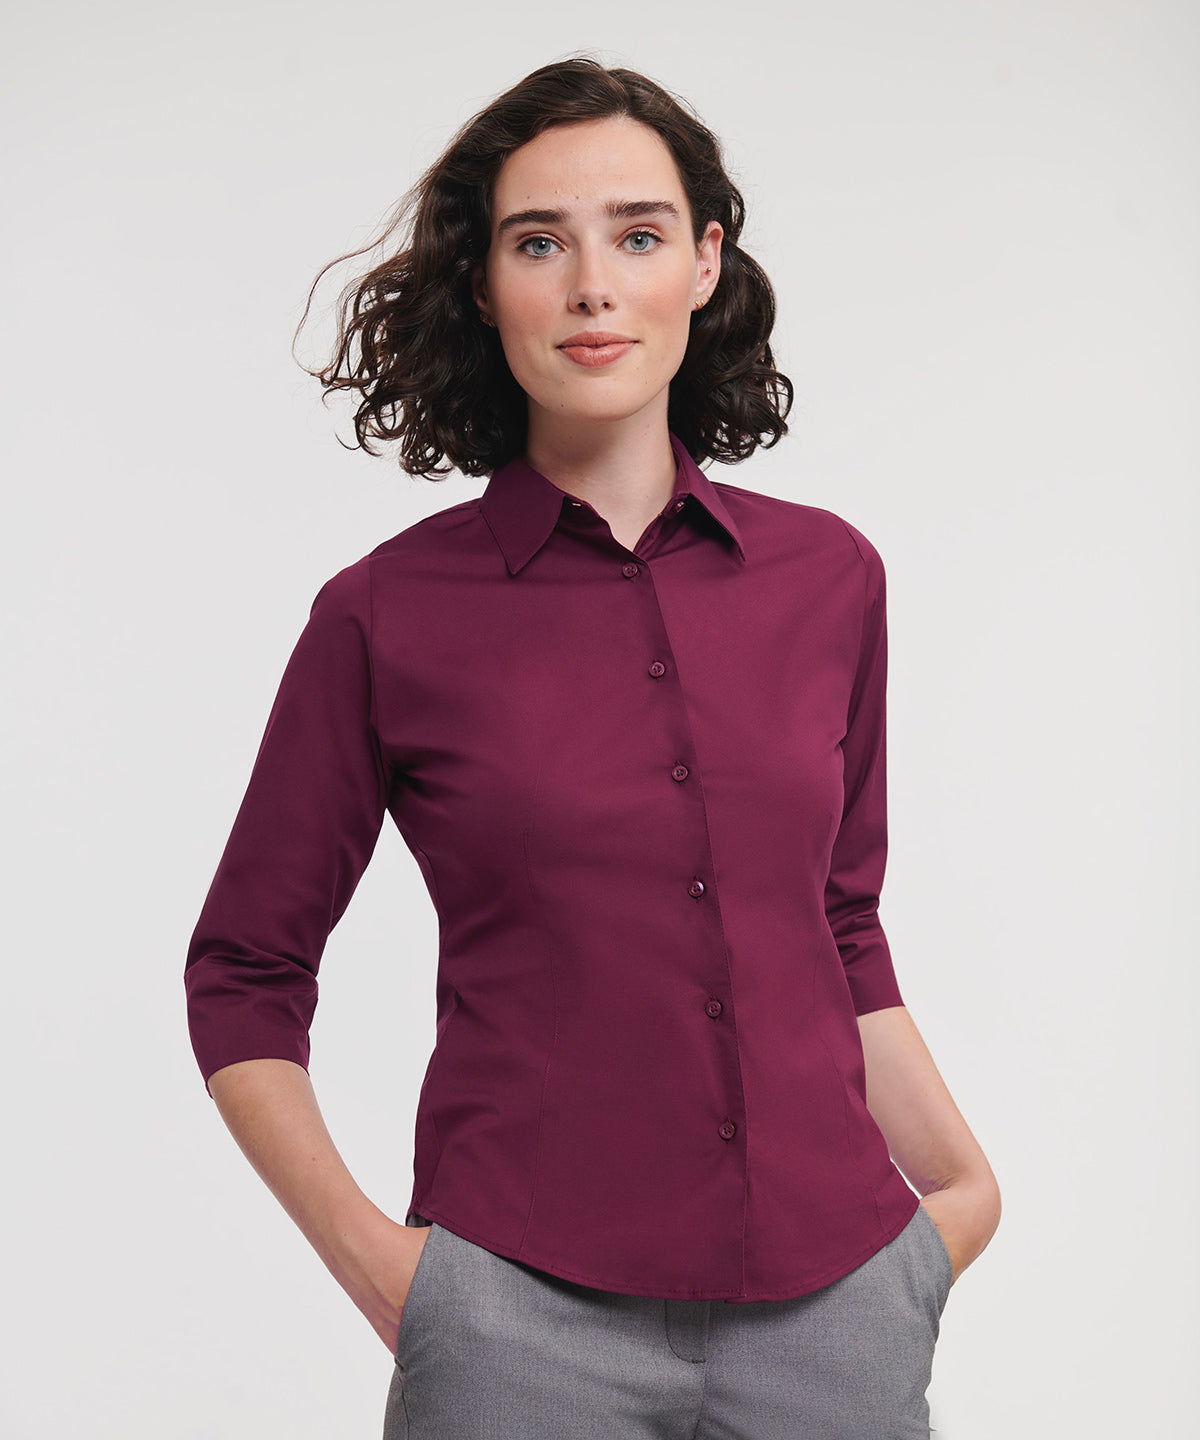 Bolir - Women's ¾ Sleeve Easycare Fitted Shirt